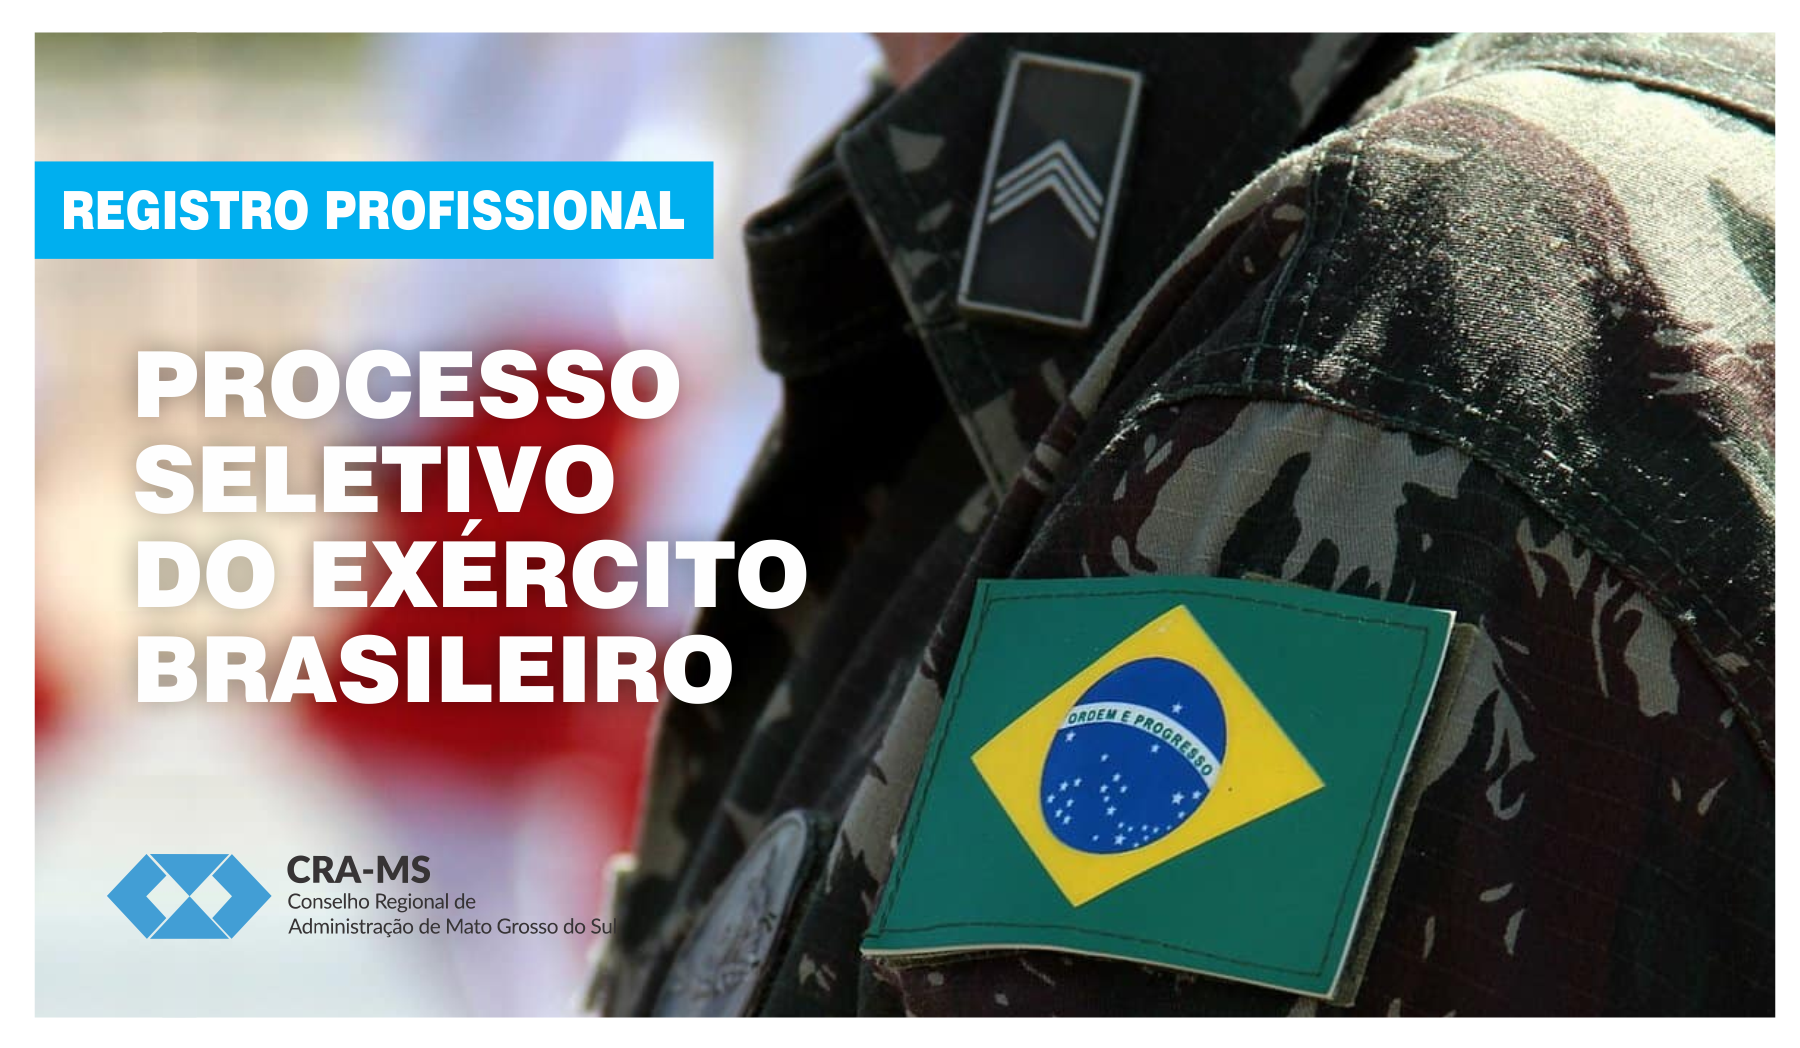 Registro profissional: Exército Brasileiro inicia inscrições para processo seletivo